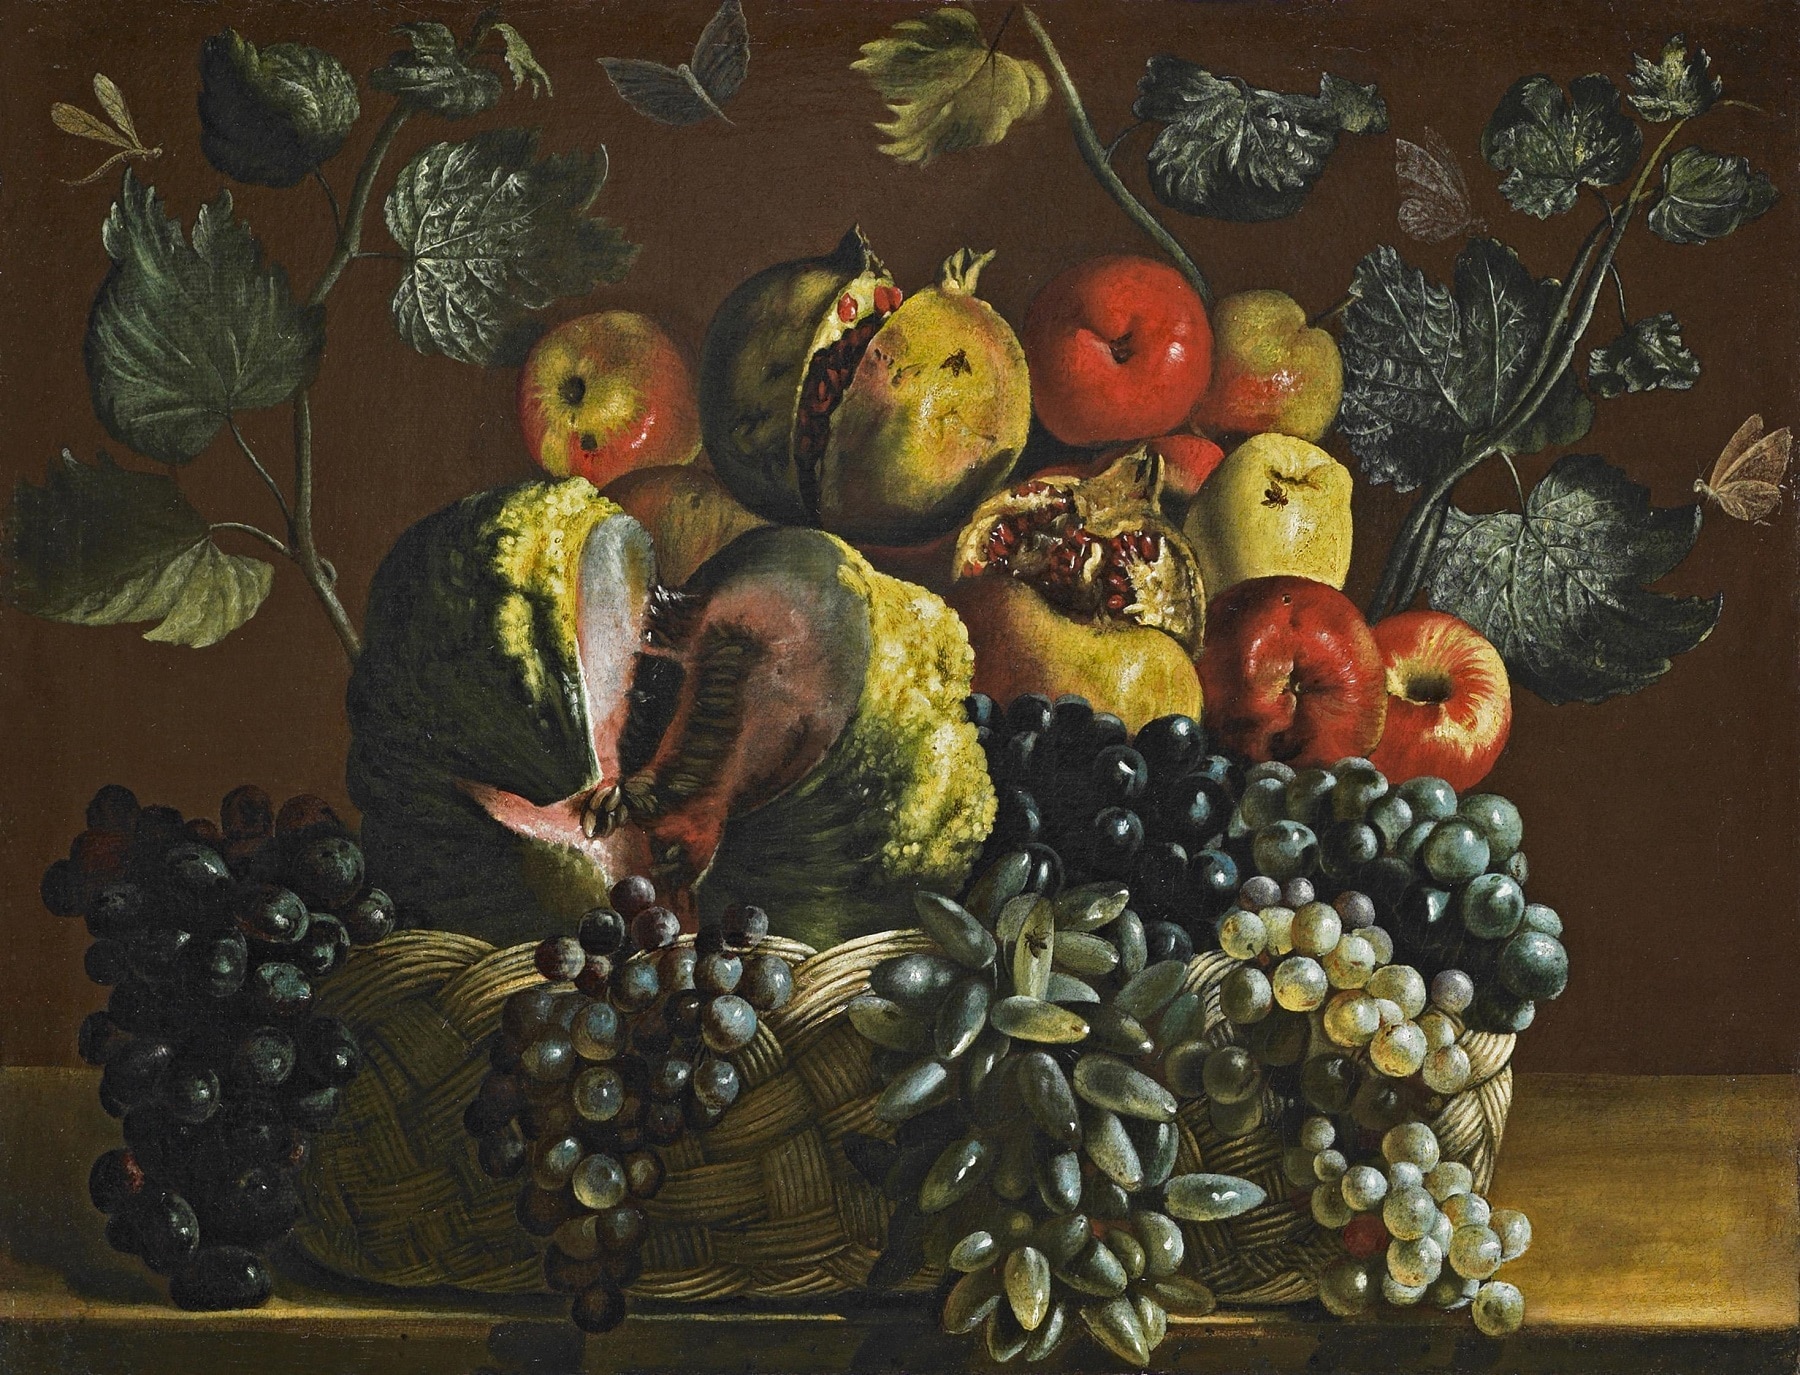 Pittore caravaggesco, Canestra di frutta, olio su tela, Galerie Canesso, Parigi